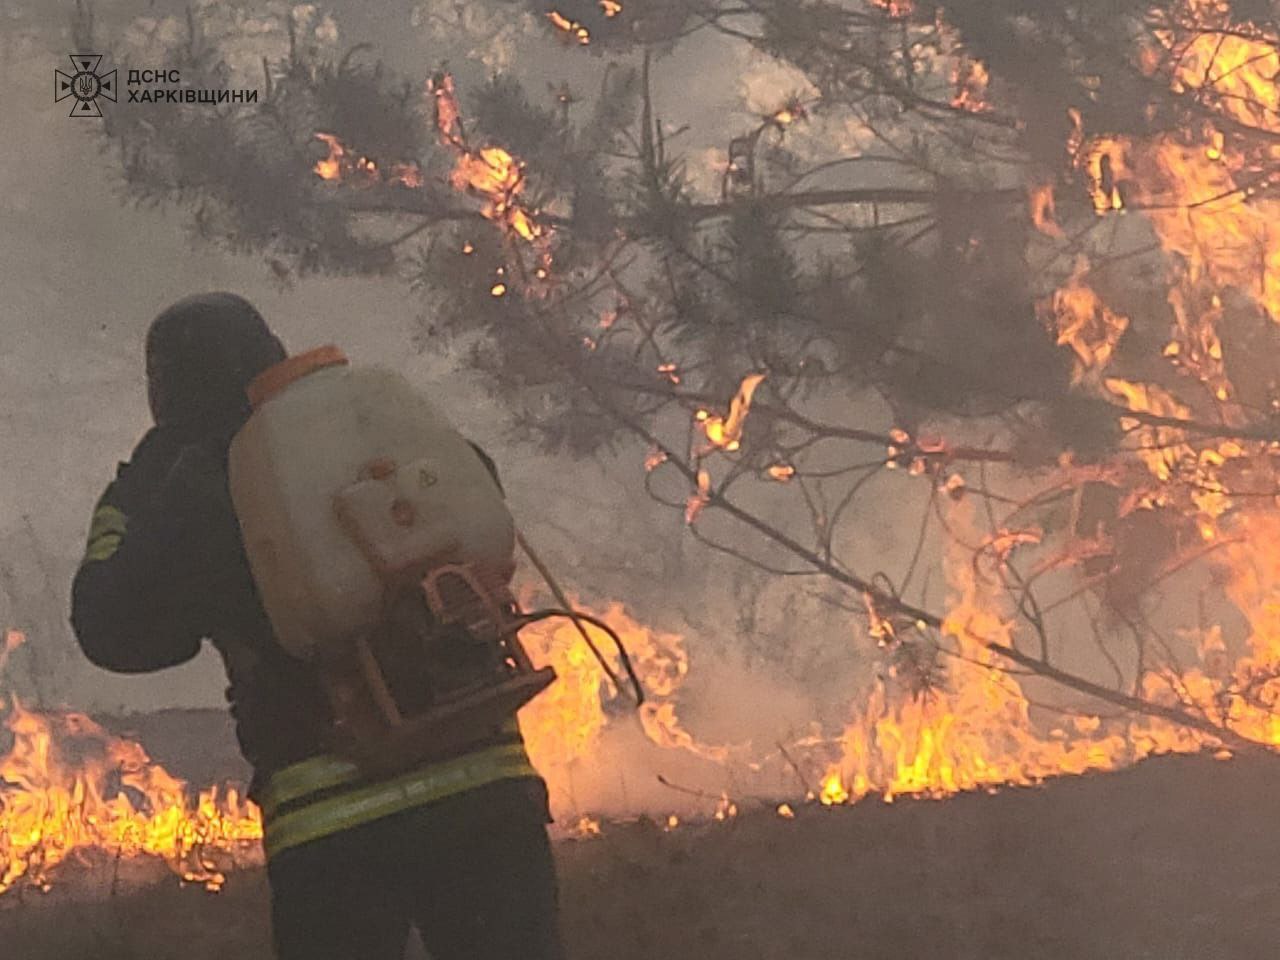 На Харківщині обстріли окупантів призвели до масштабної лісової пожежі